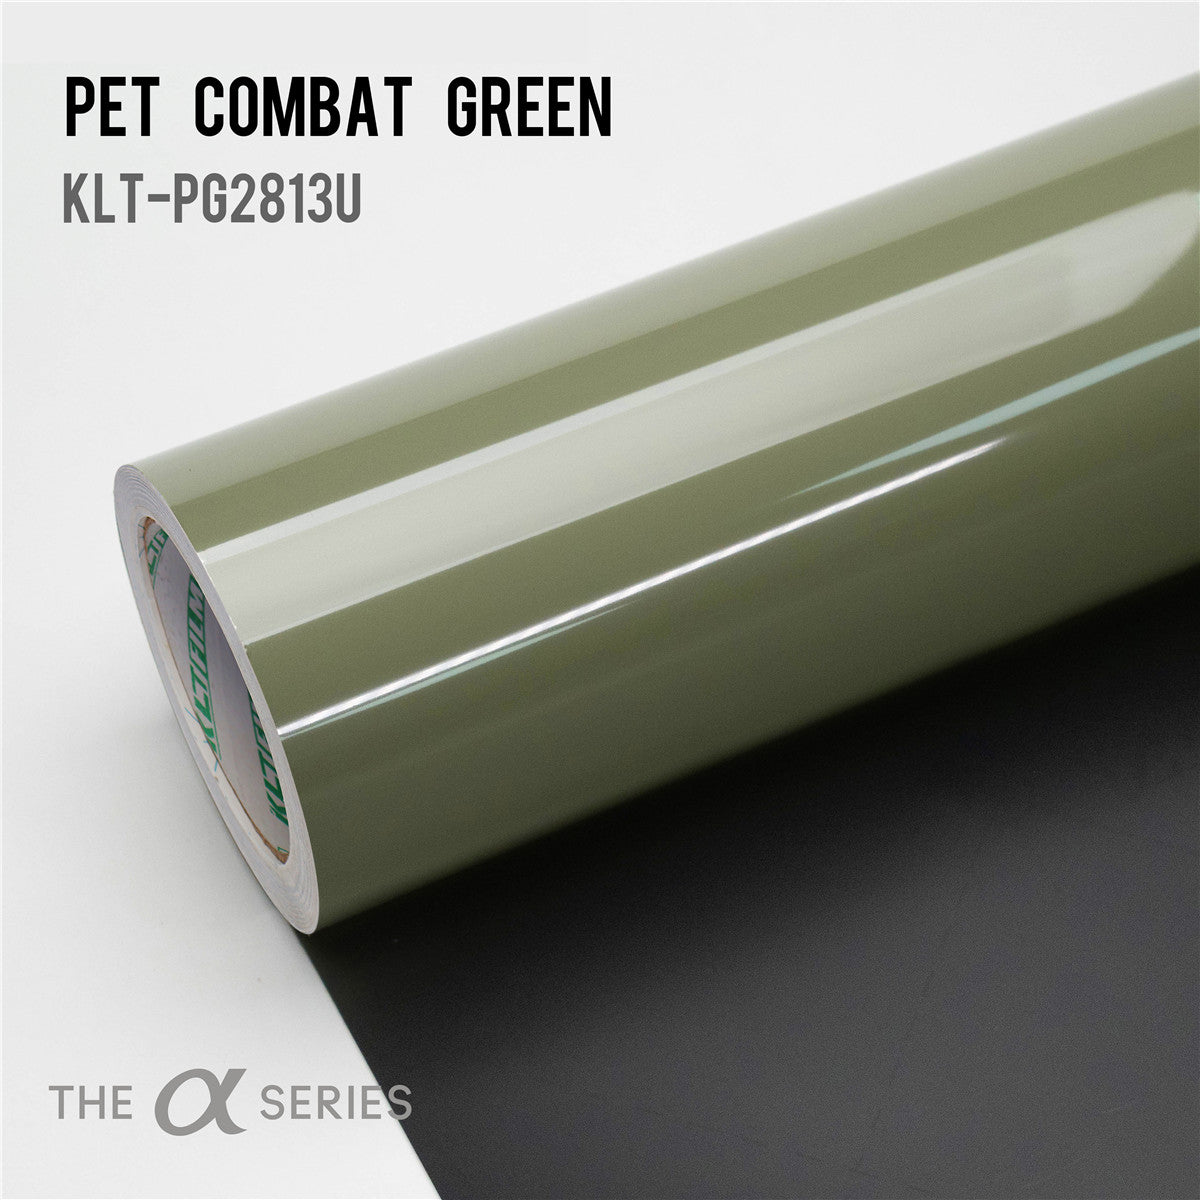 PET Combat Green